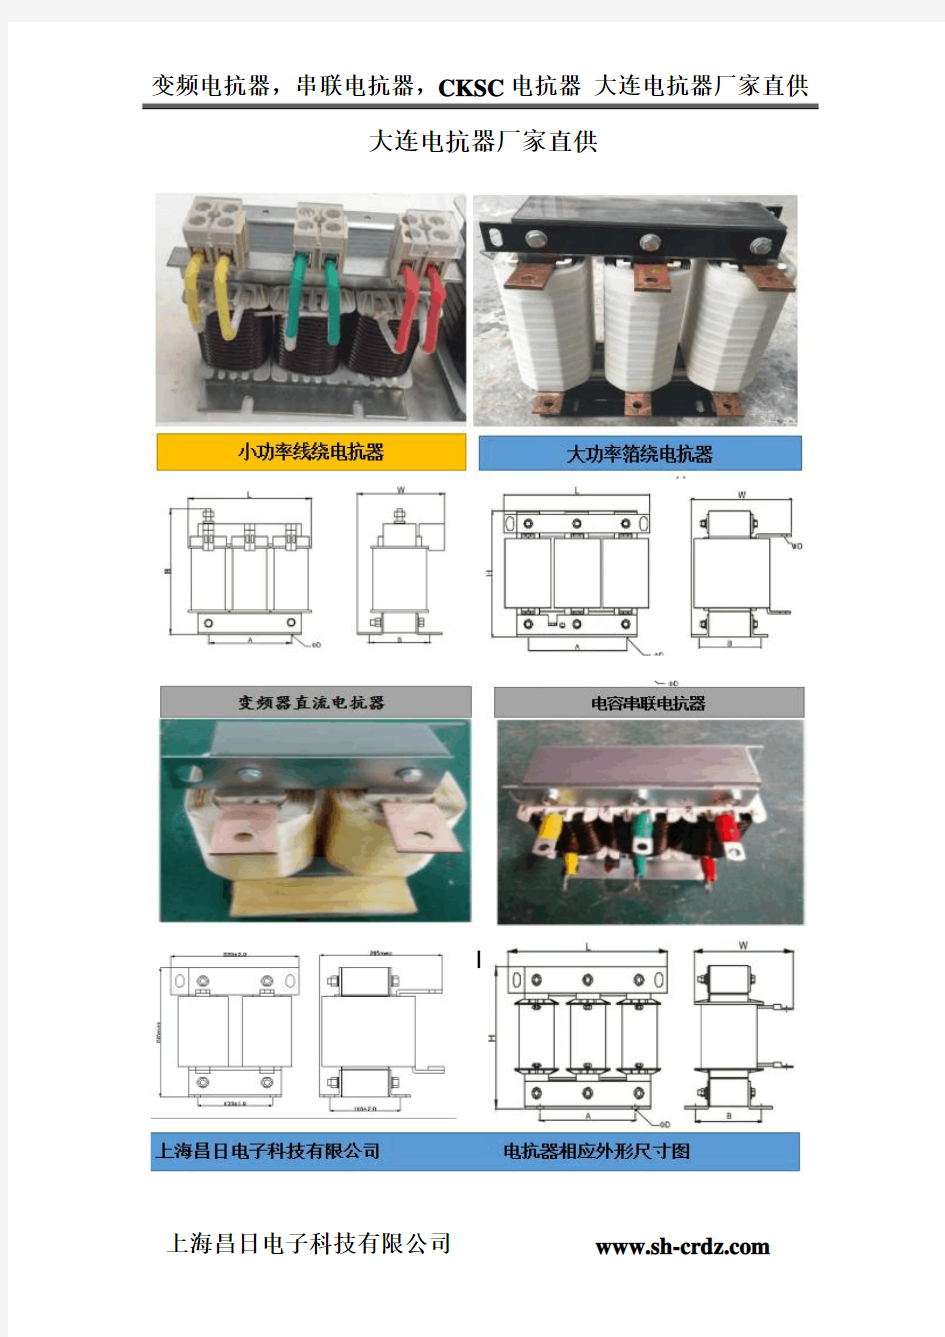 大连电抗器厂家-上海昌日电抗器厂家生产各类电抗器